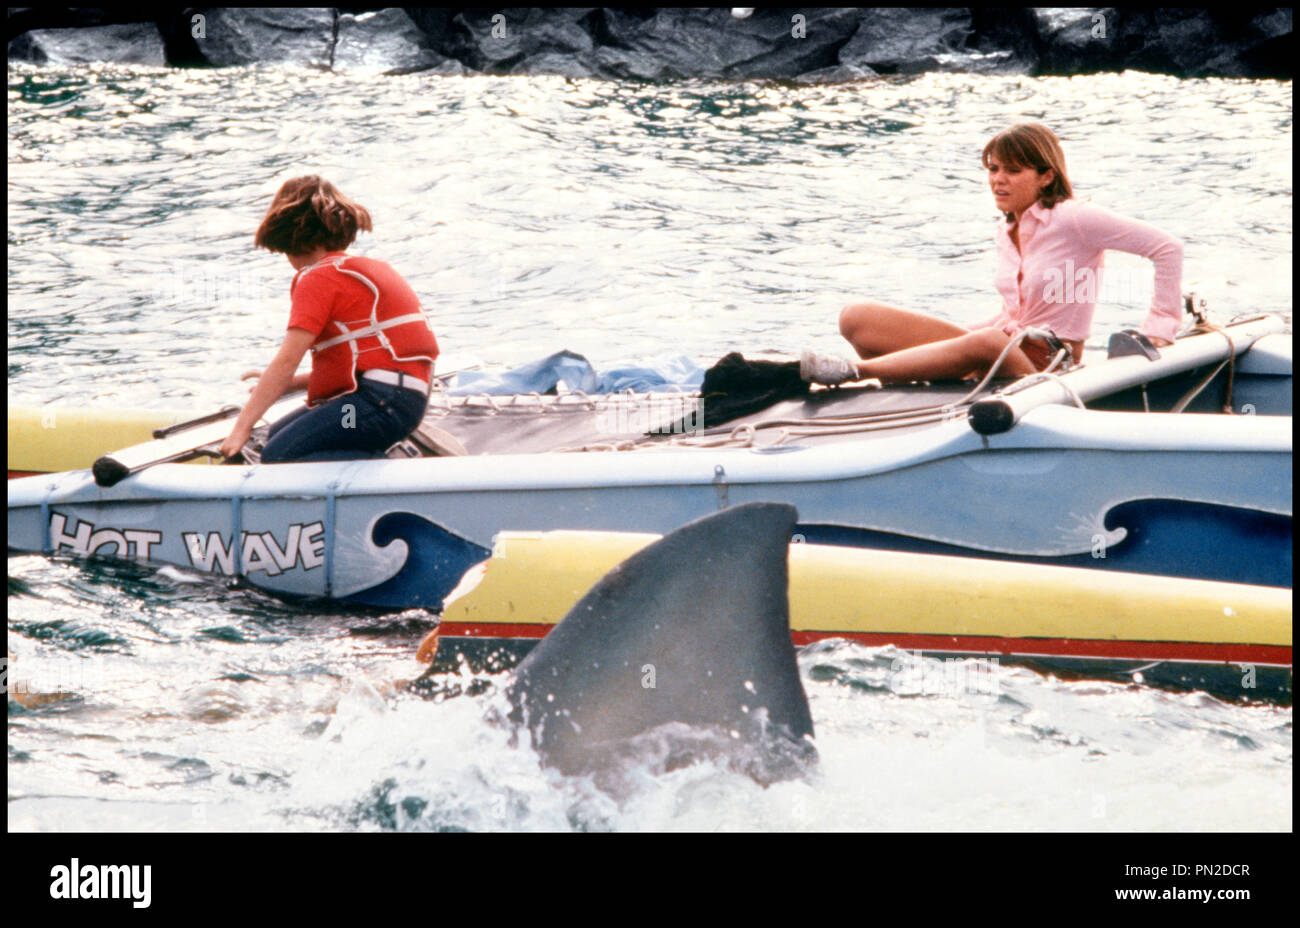 prod-db-universal-pictures-dr-les-dents-de-la-mer-2eme-partie-jaws-2-de-jeannot-szwarc-1978-usa-marc-gilpin-et-donna-wilkes-danger-requin-catamaran-voile-sequelle-PN2DCR.jpg